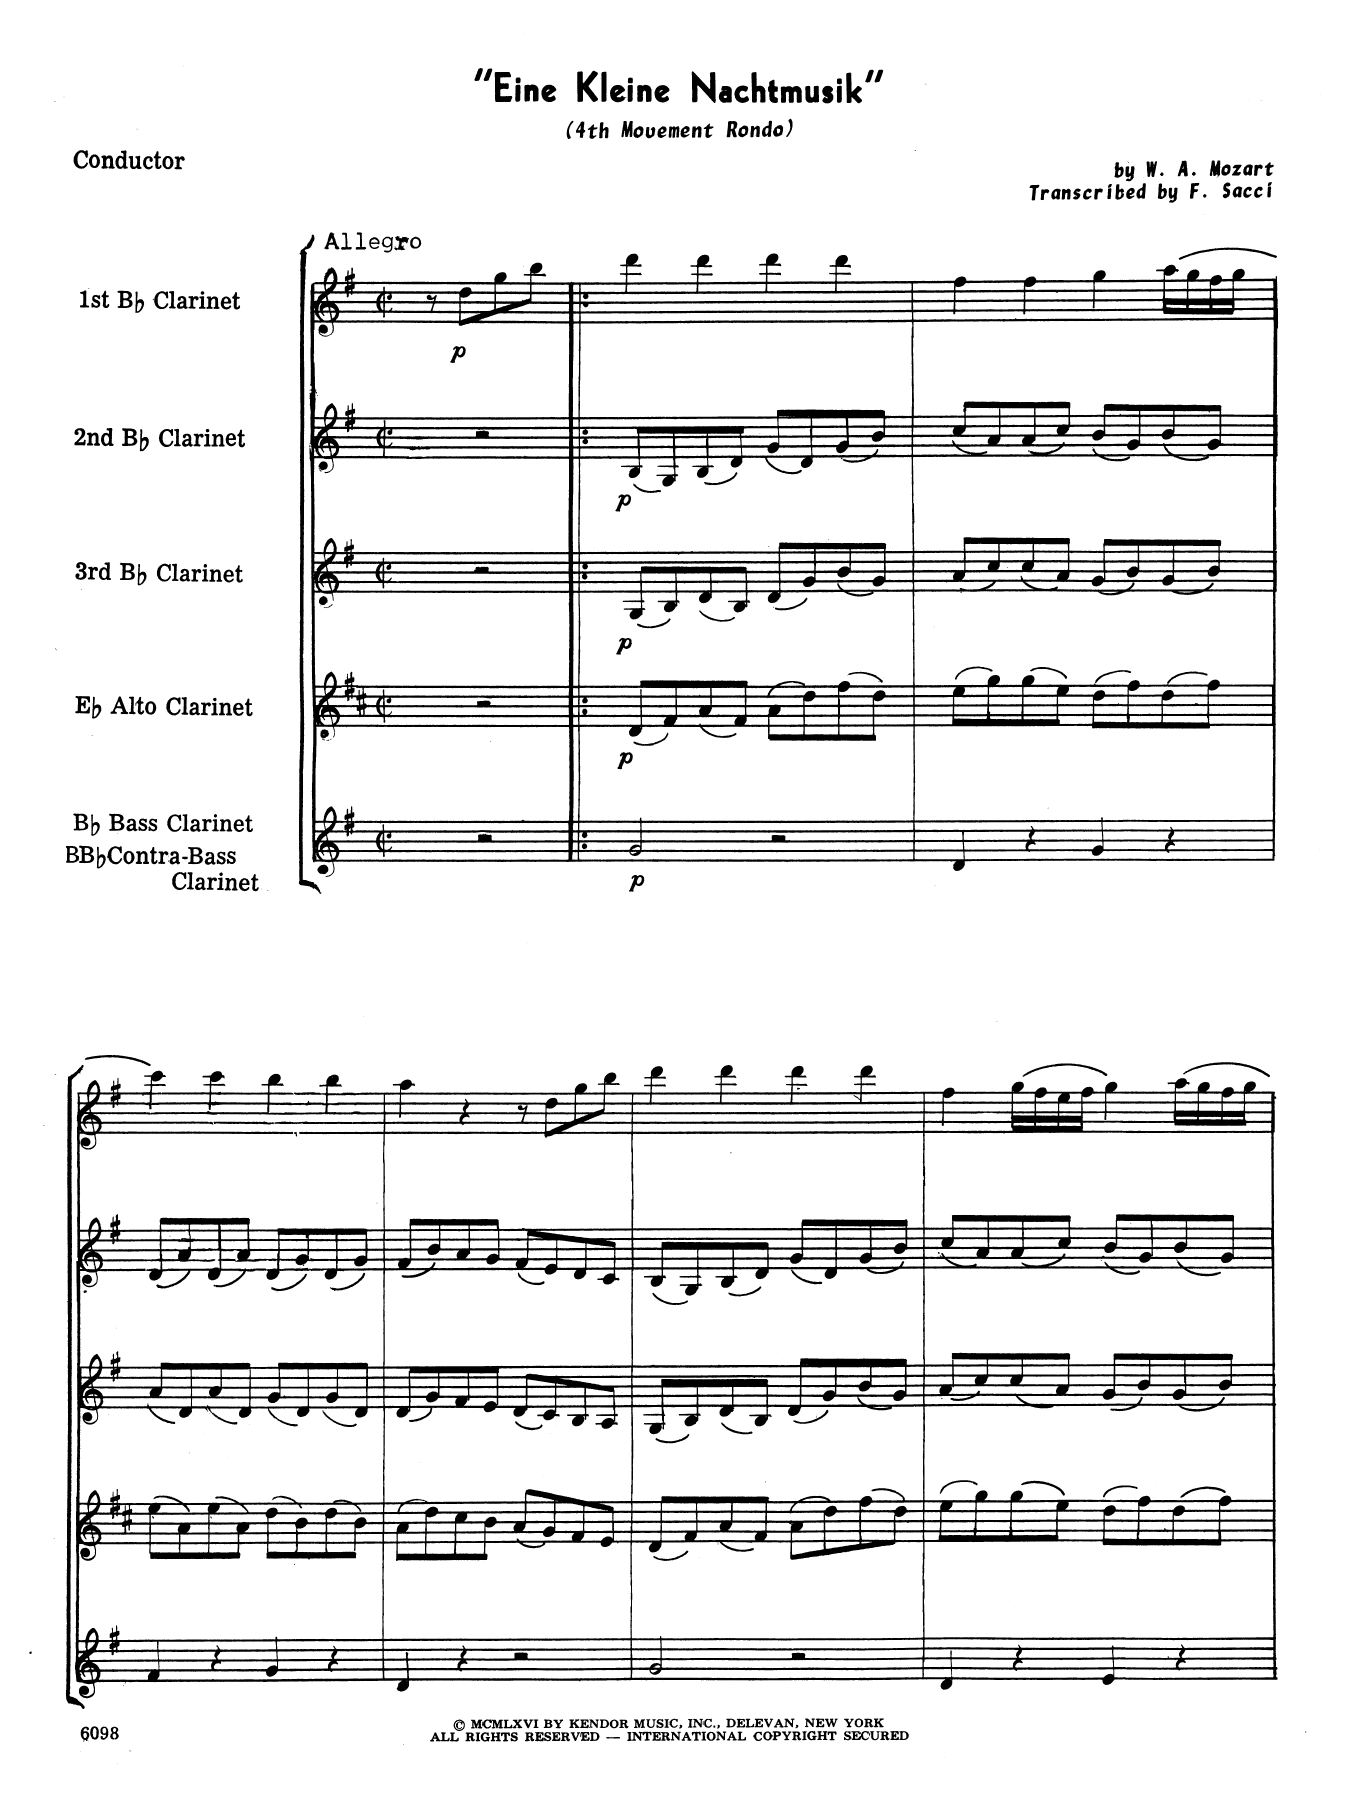 Eine Kleine Nachtmusik/Rondo (Mvt. 4) (arr. Frank Sacci) - Full Score (Woodwind Ensemble) von Wolfgang Mozart